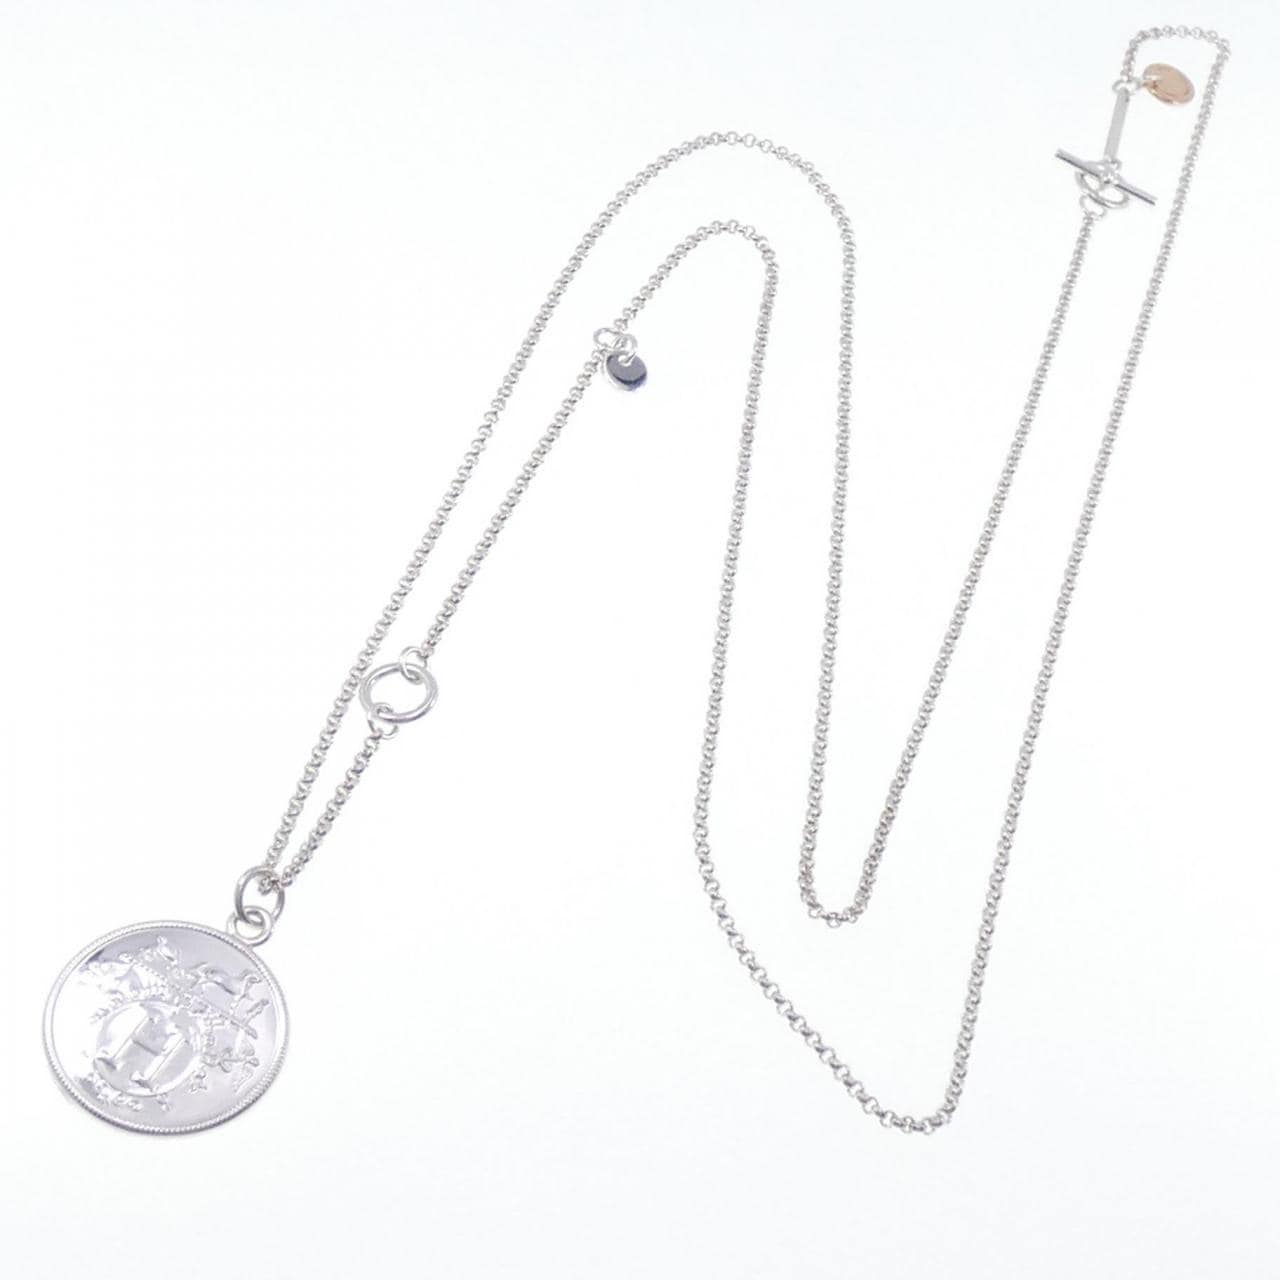 Hermes Mini Pop H Necklace. Marron Glace/Silver - Lilac Blue London